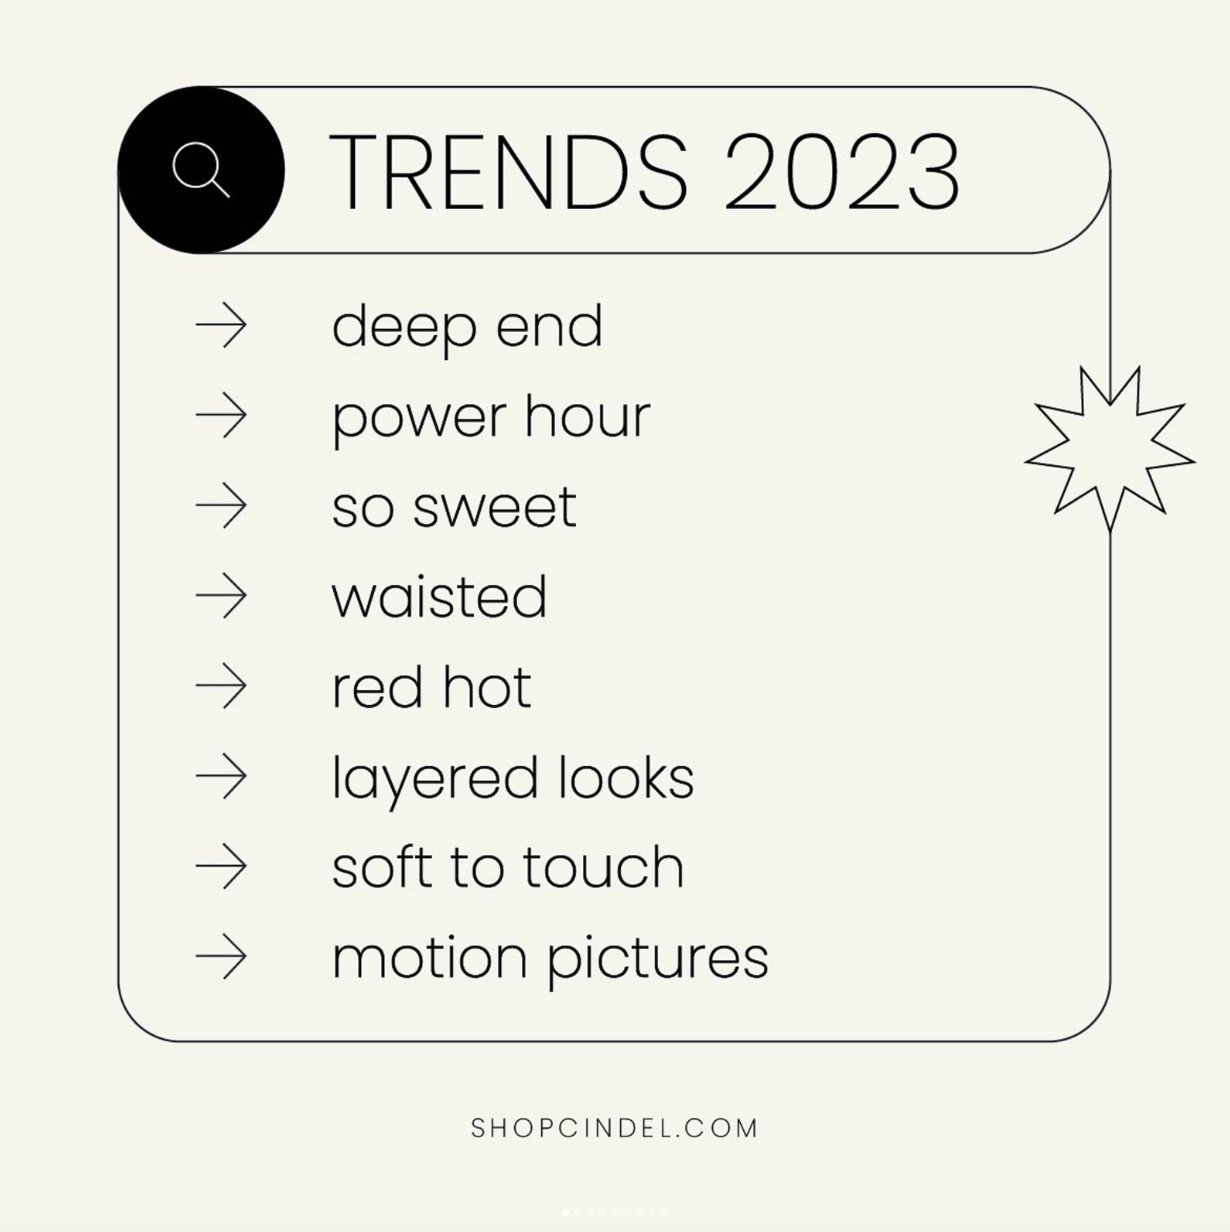 Estas son las 8 tendencias en vestidos para Otoño/Invierno 2023 - Cindel